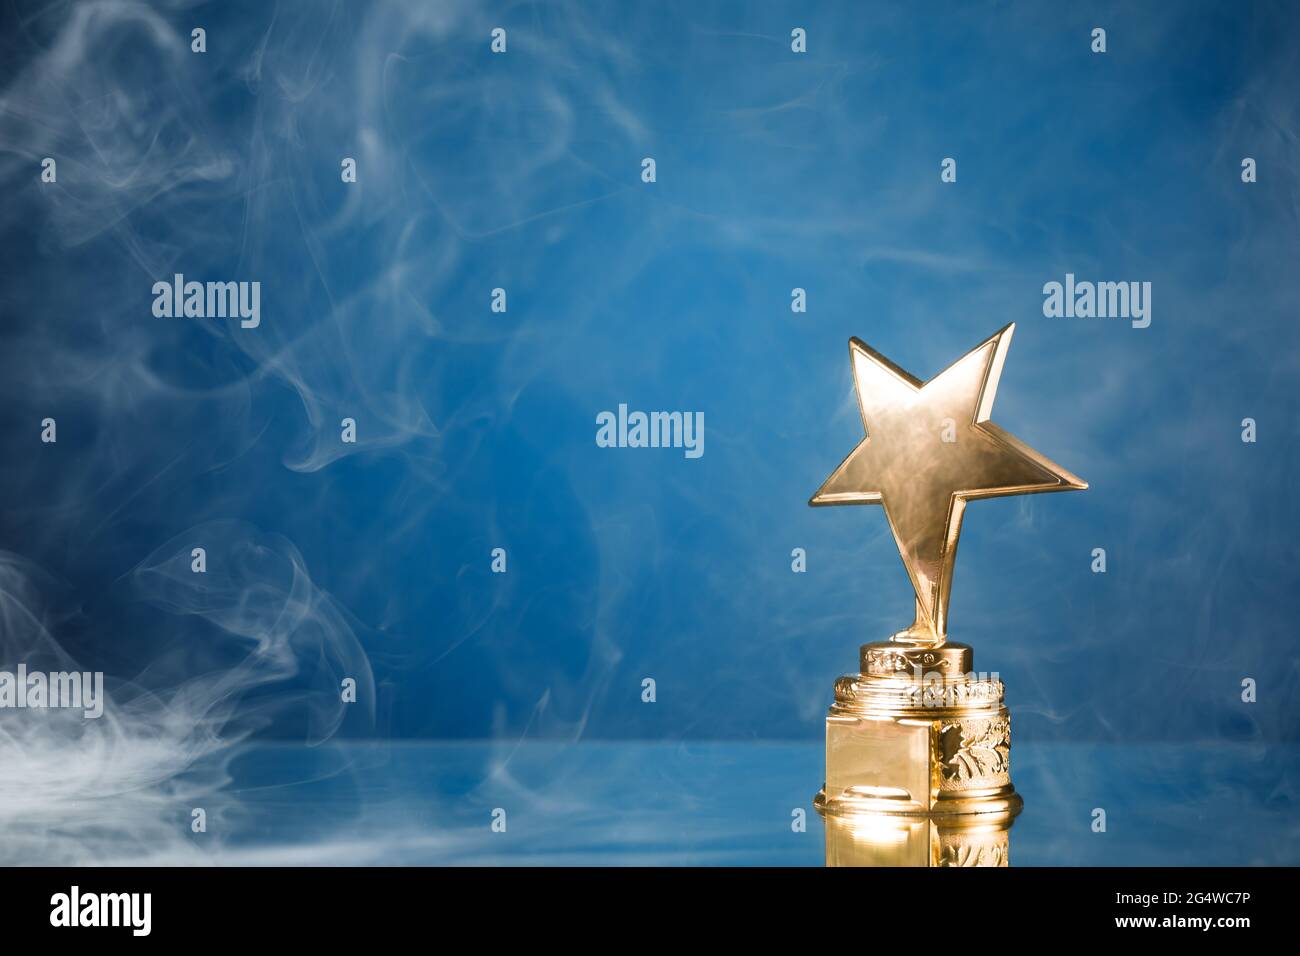 trophée étoile d'or en fumée, fond bleu Banque D'Images